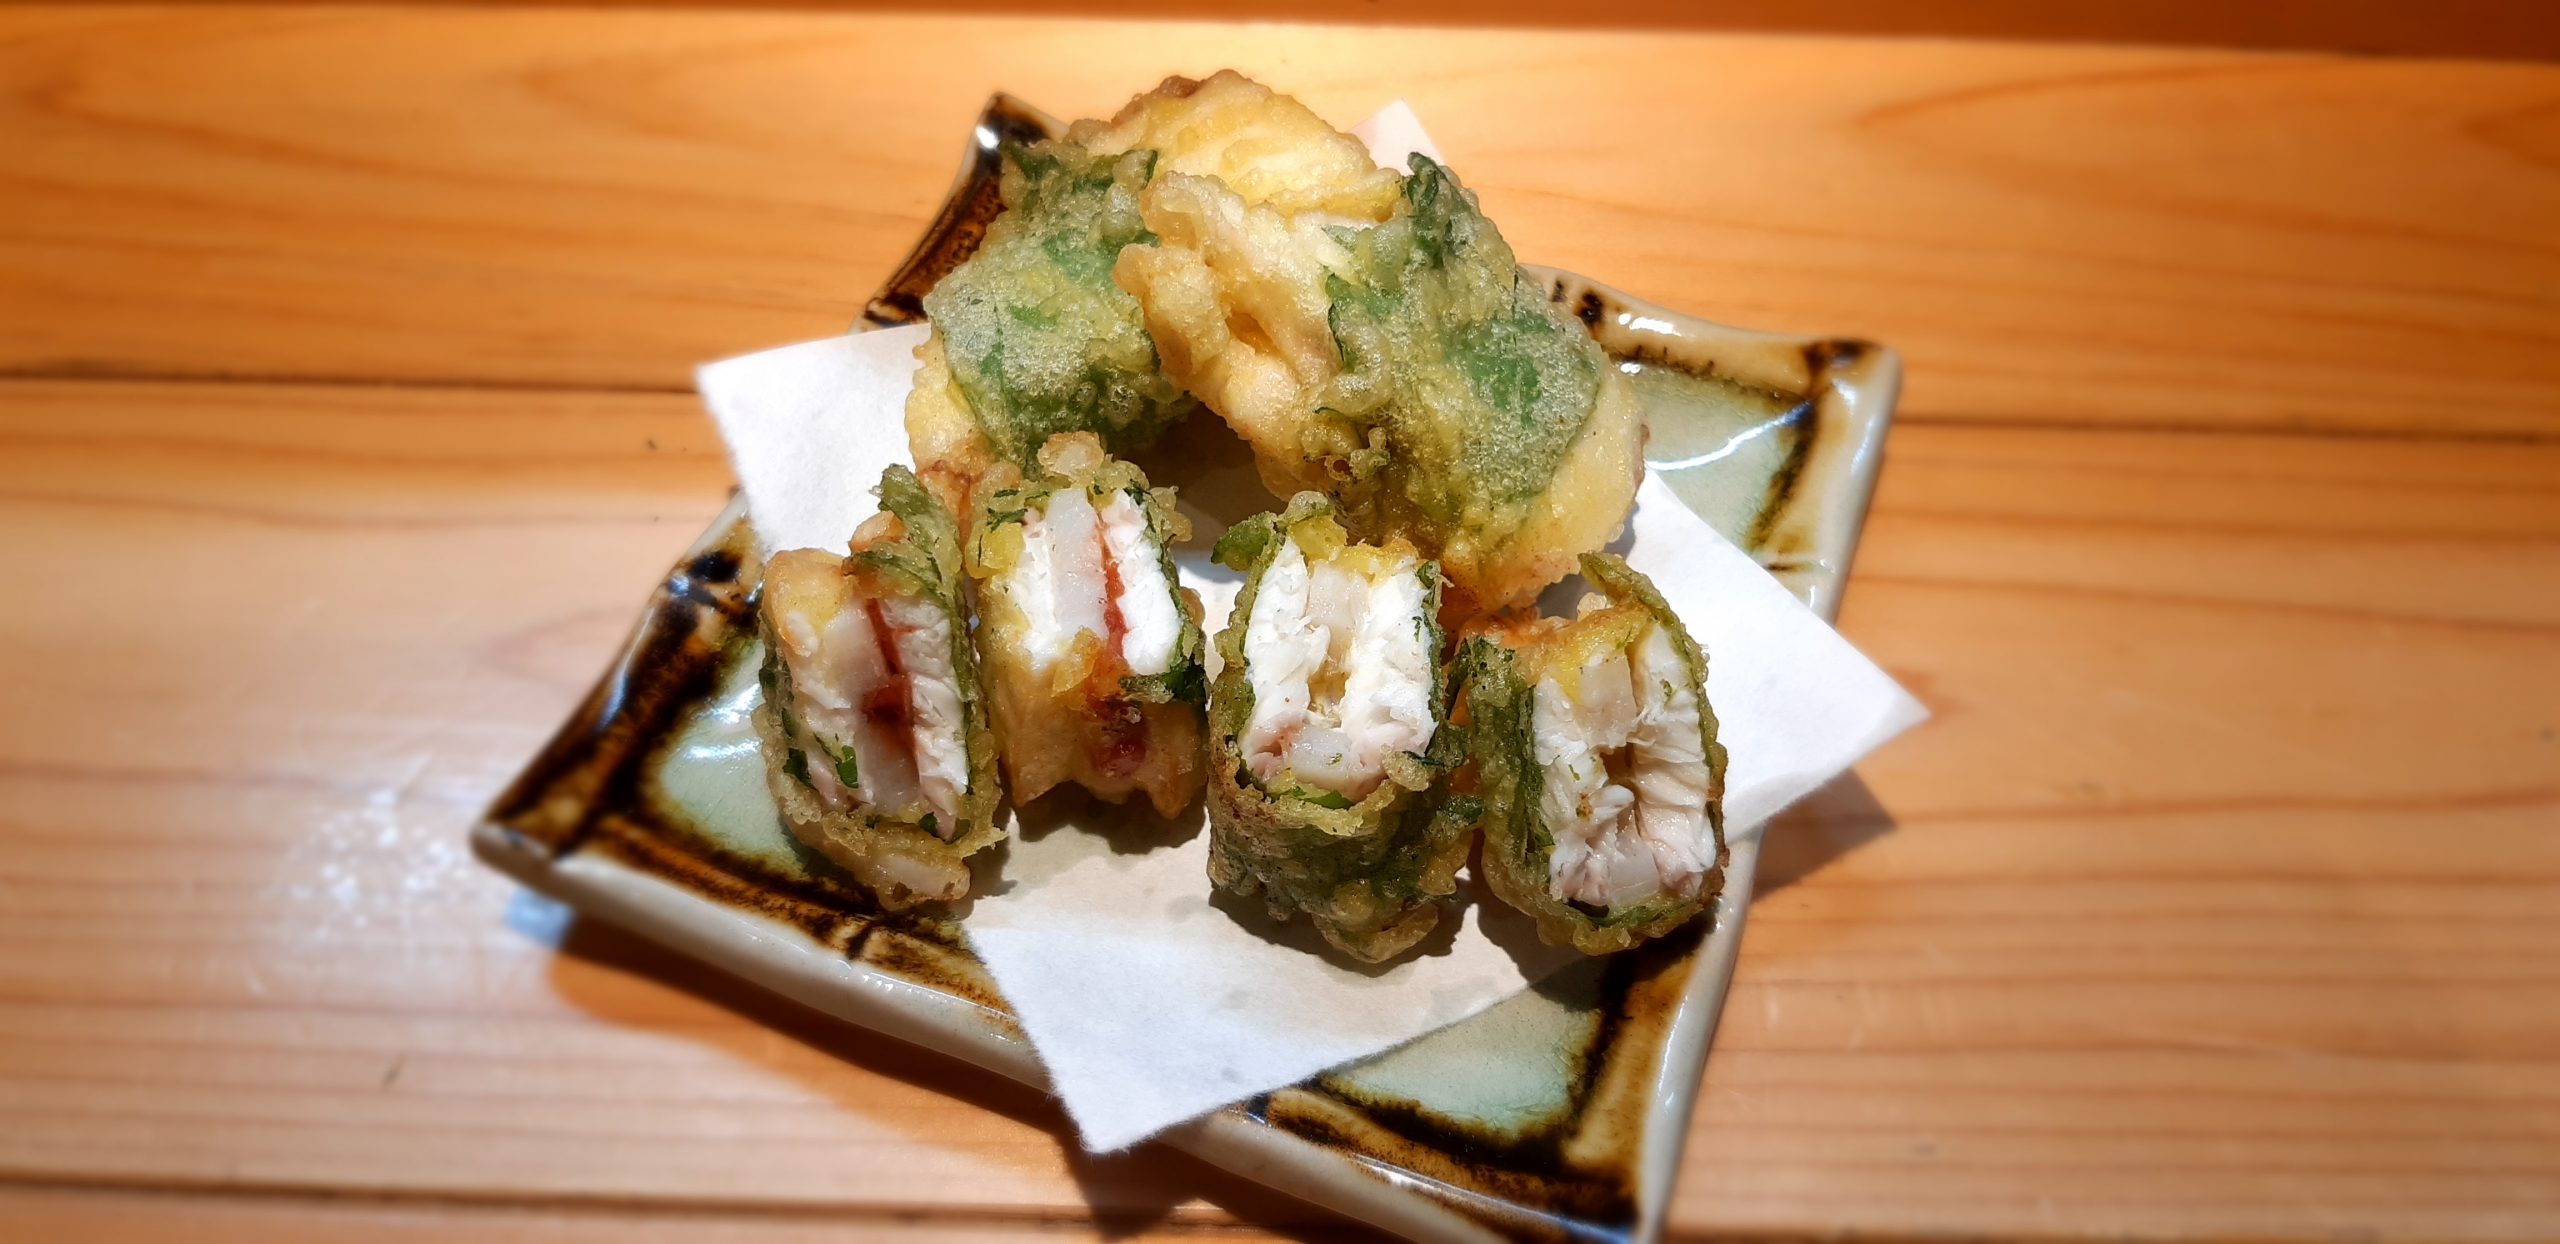 シマアジとれんこんの大葉挟み揚げ 梅肉 柚子胡椒 海の恵み 食の底力 Japan 公式レシピサイト